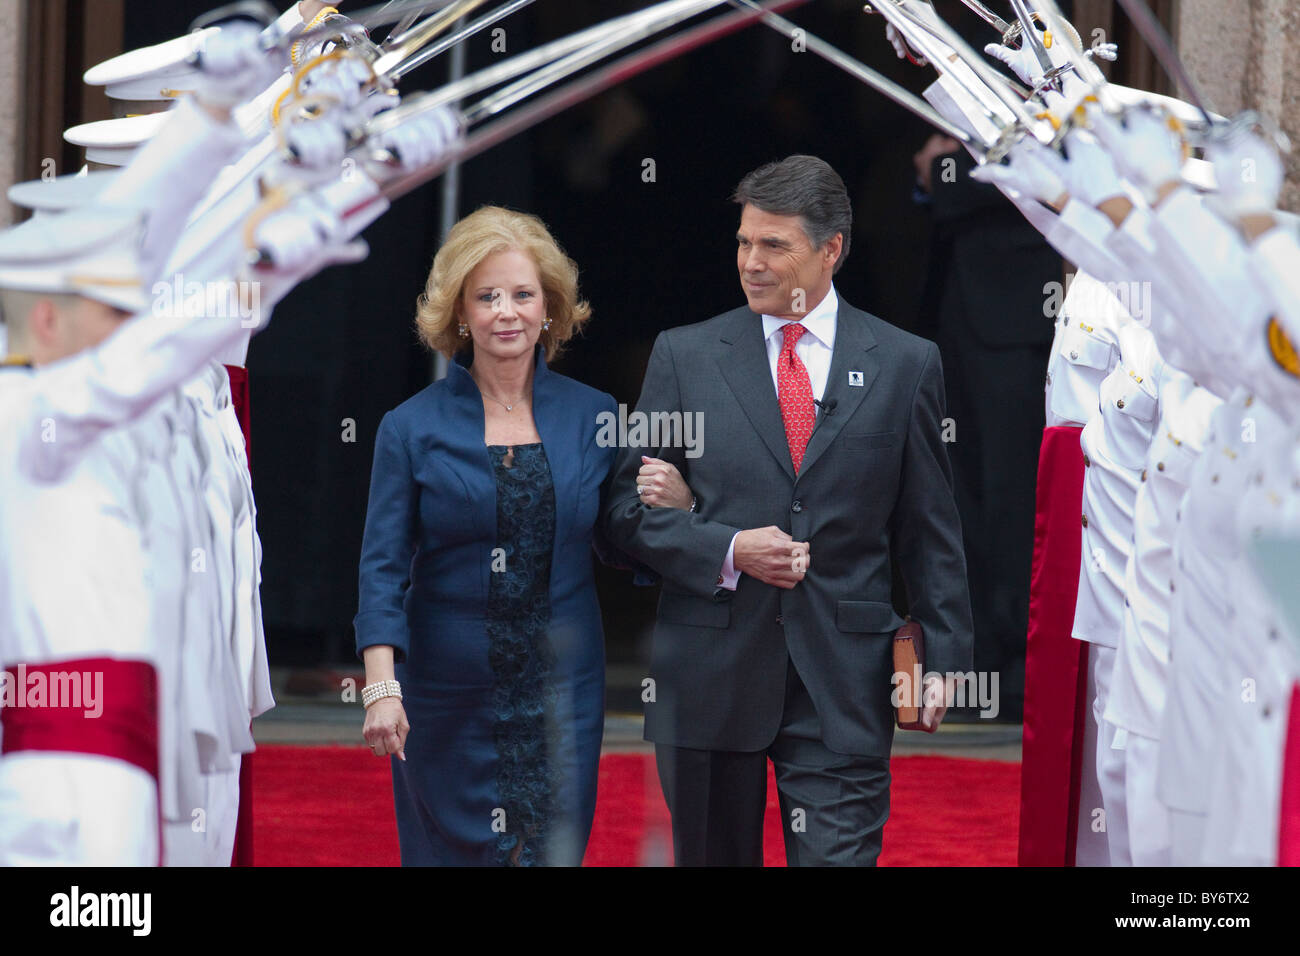 El Gobernador de Texas. Rick Perry, esposa Anita entran a través de un arco de espadas antes de tomar el juramento de cargo después de su reelección en noviembre Foto de stock